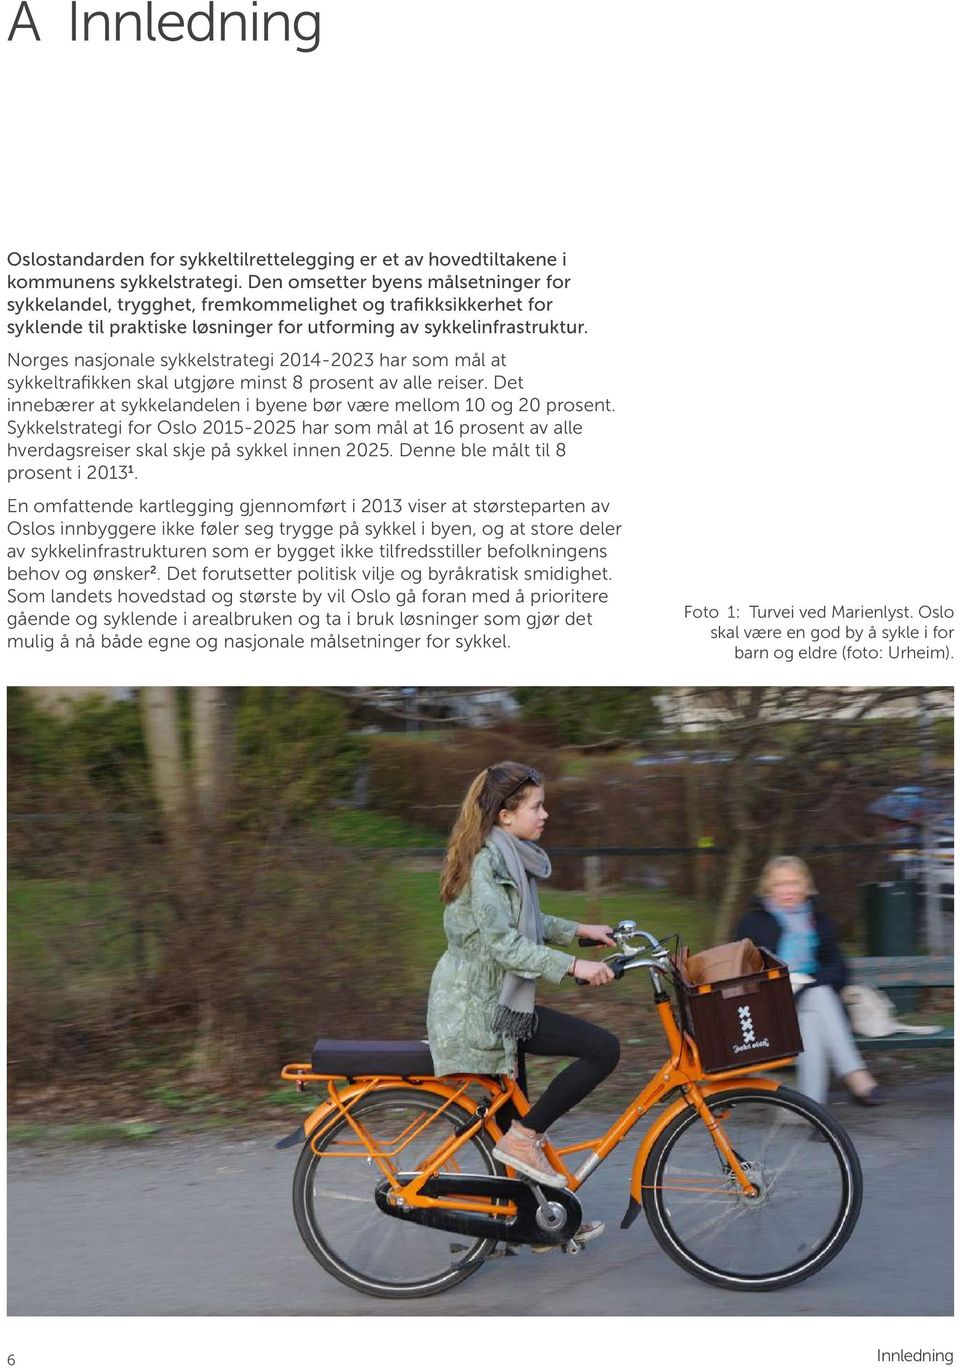 Norges nasjonale sykkelstrategi 2014-2023 har som mål at sykkeltrafikken skal utgjøre minst 8 prosent av alle reiser. Det innebærer at sykkelandelen i byene bør være mellom 10 og 20 prosent.